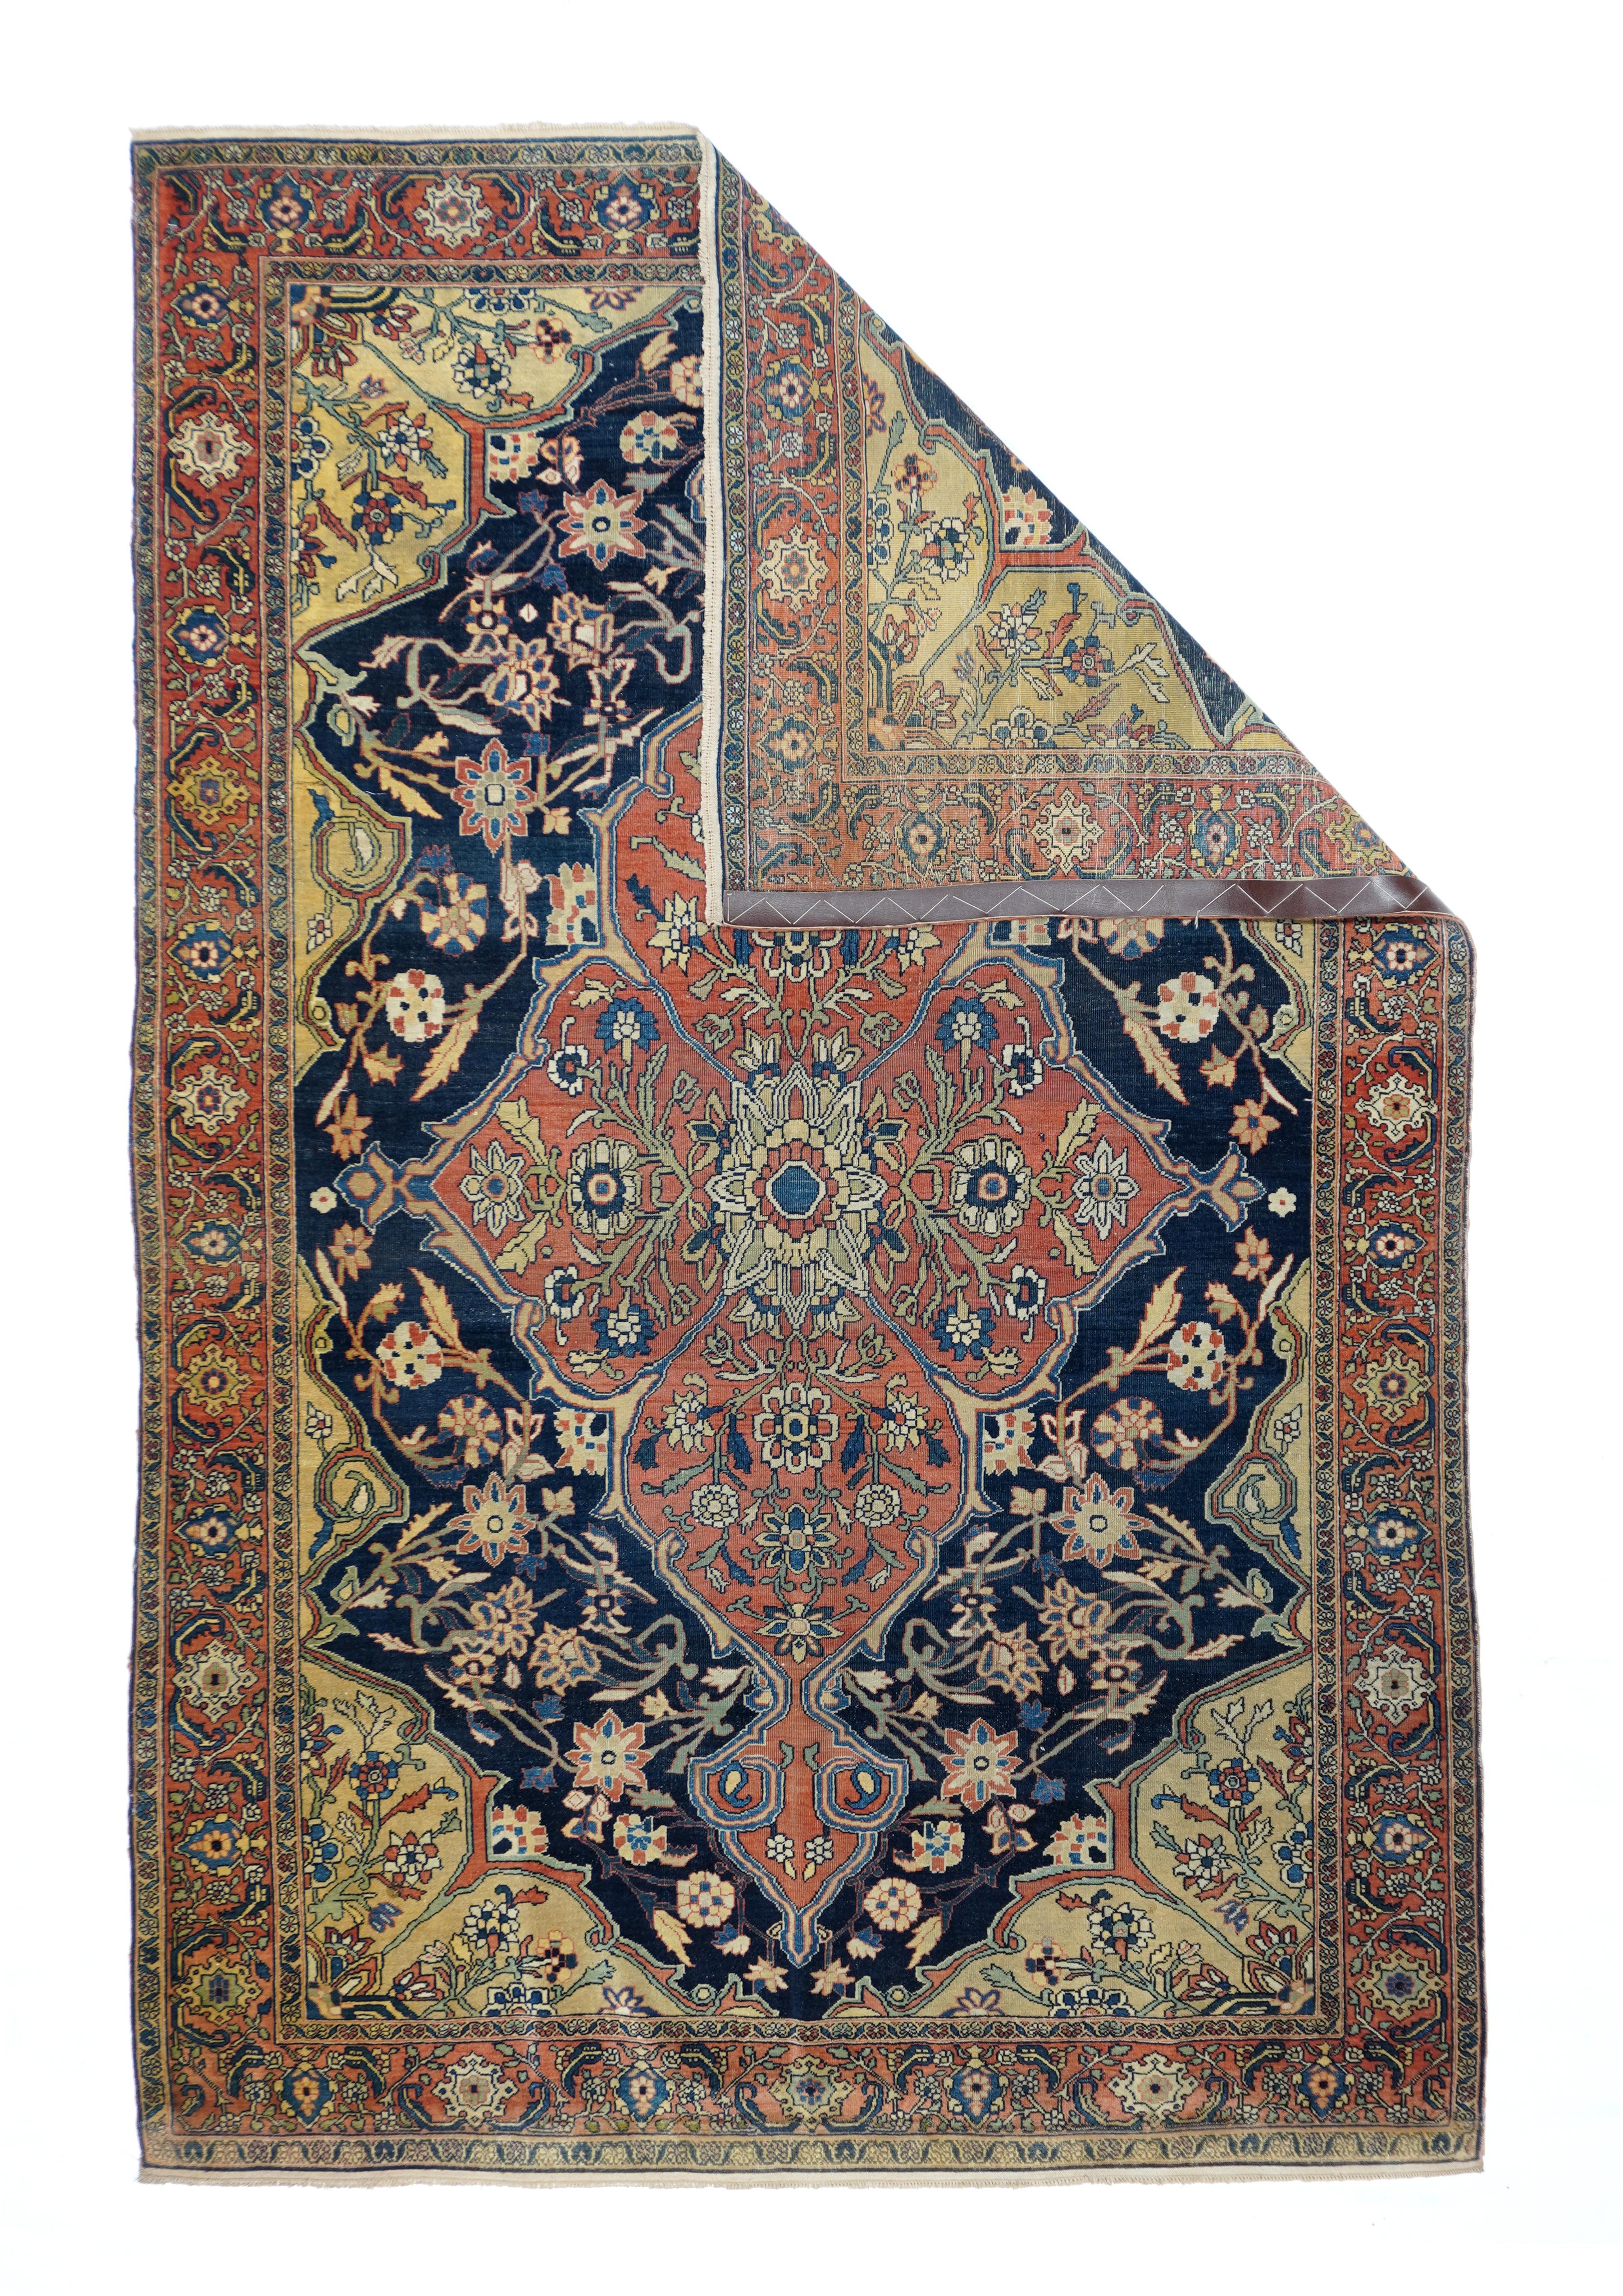 Antique Sarouk rug, measures : 4'4'' x 6'6''.